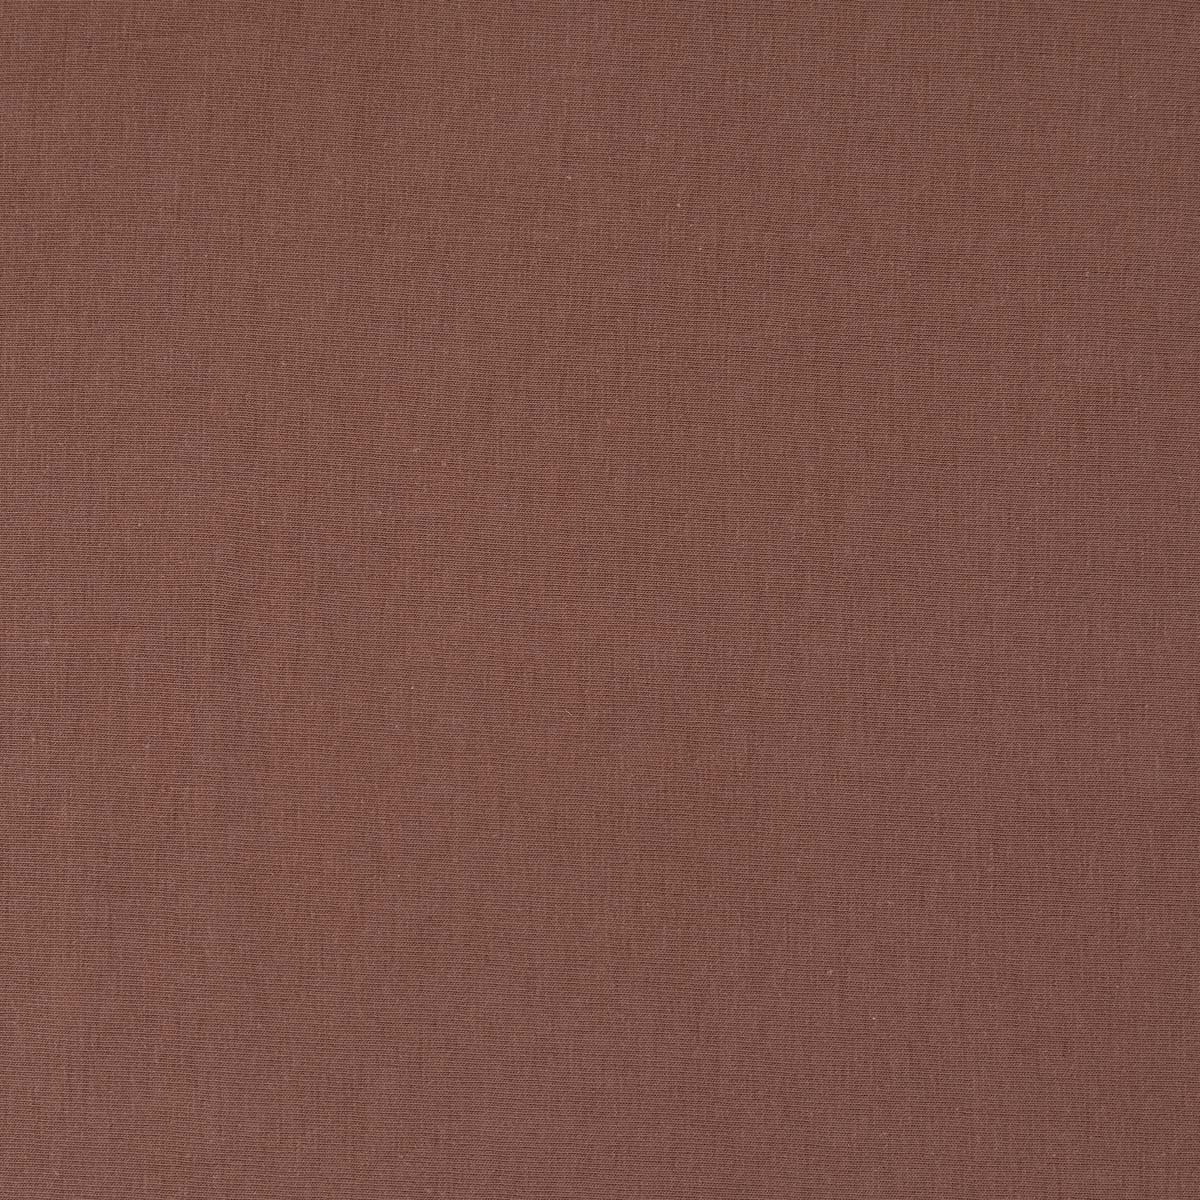 Простыня натяжная 2-спальная Pappel 180x220см, цвет коричневый Pappel 180220-35/Braun 180220-35/Braun - фото 2